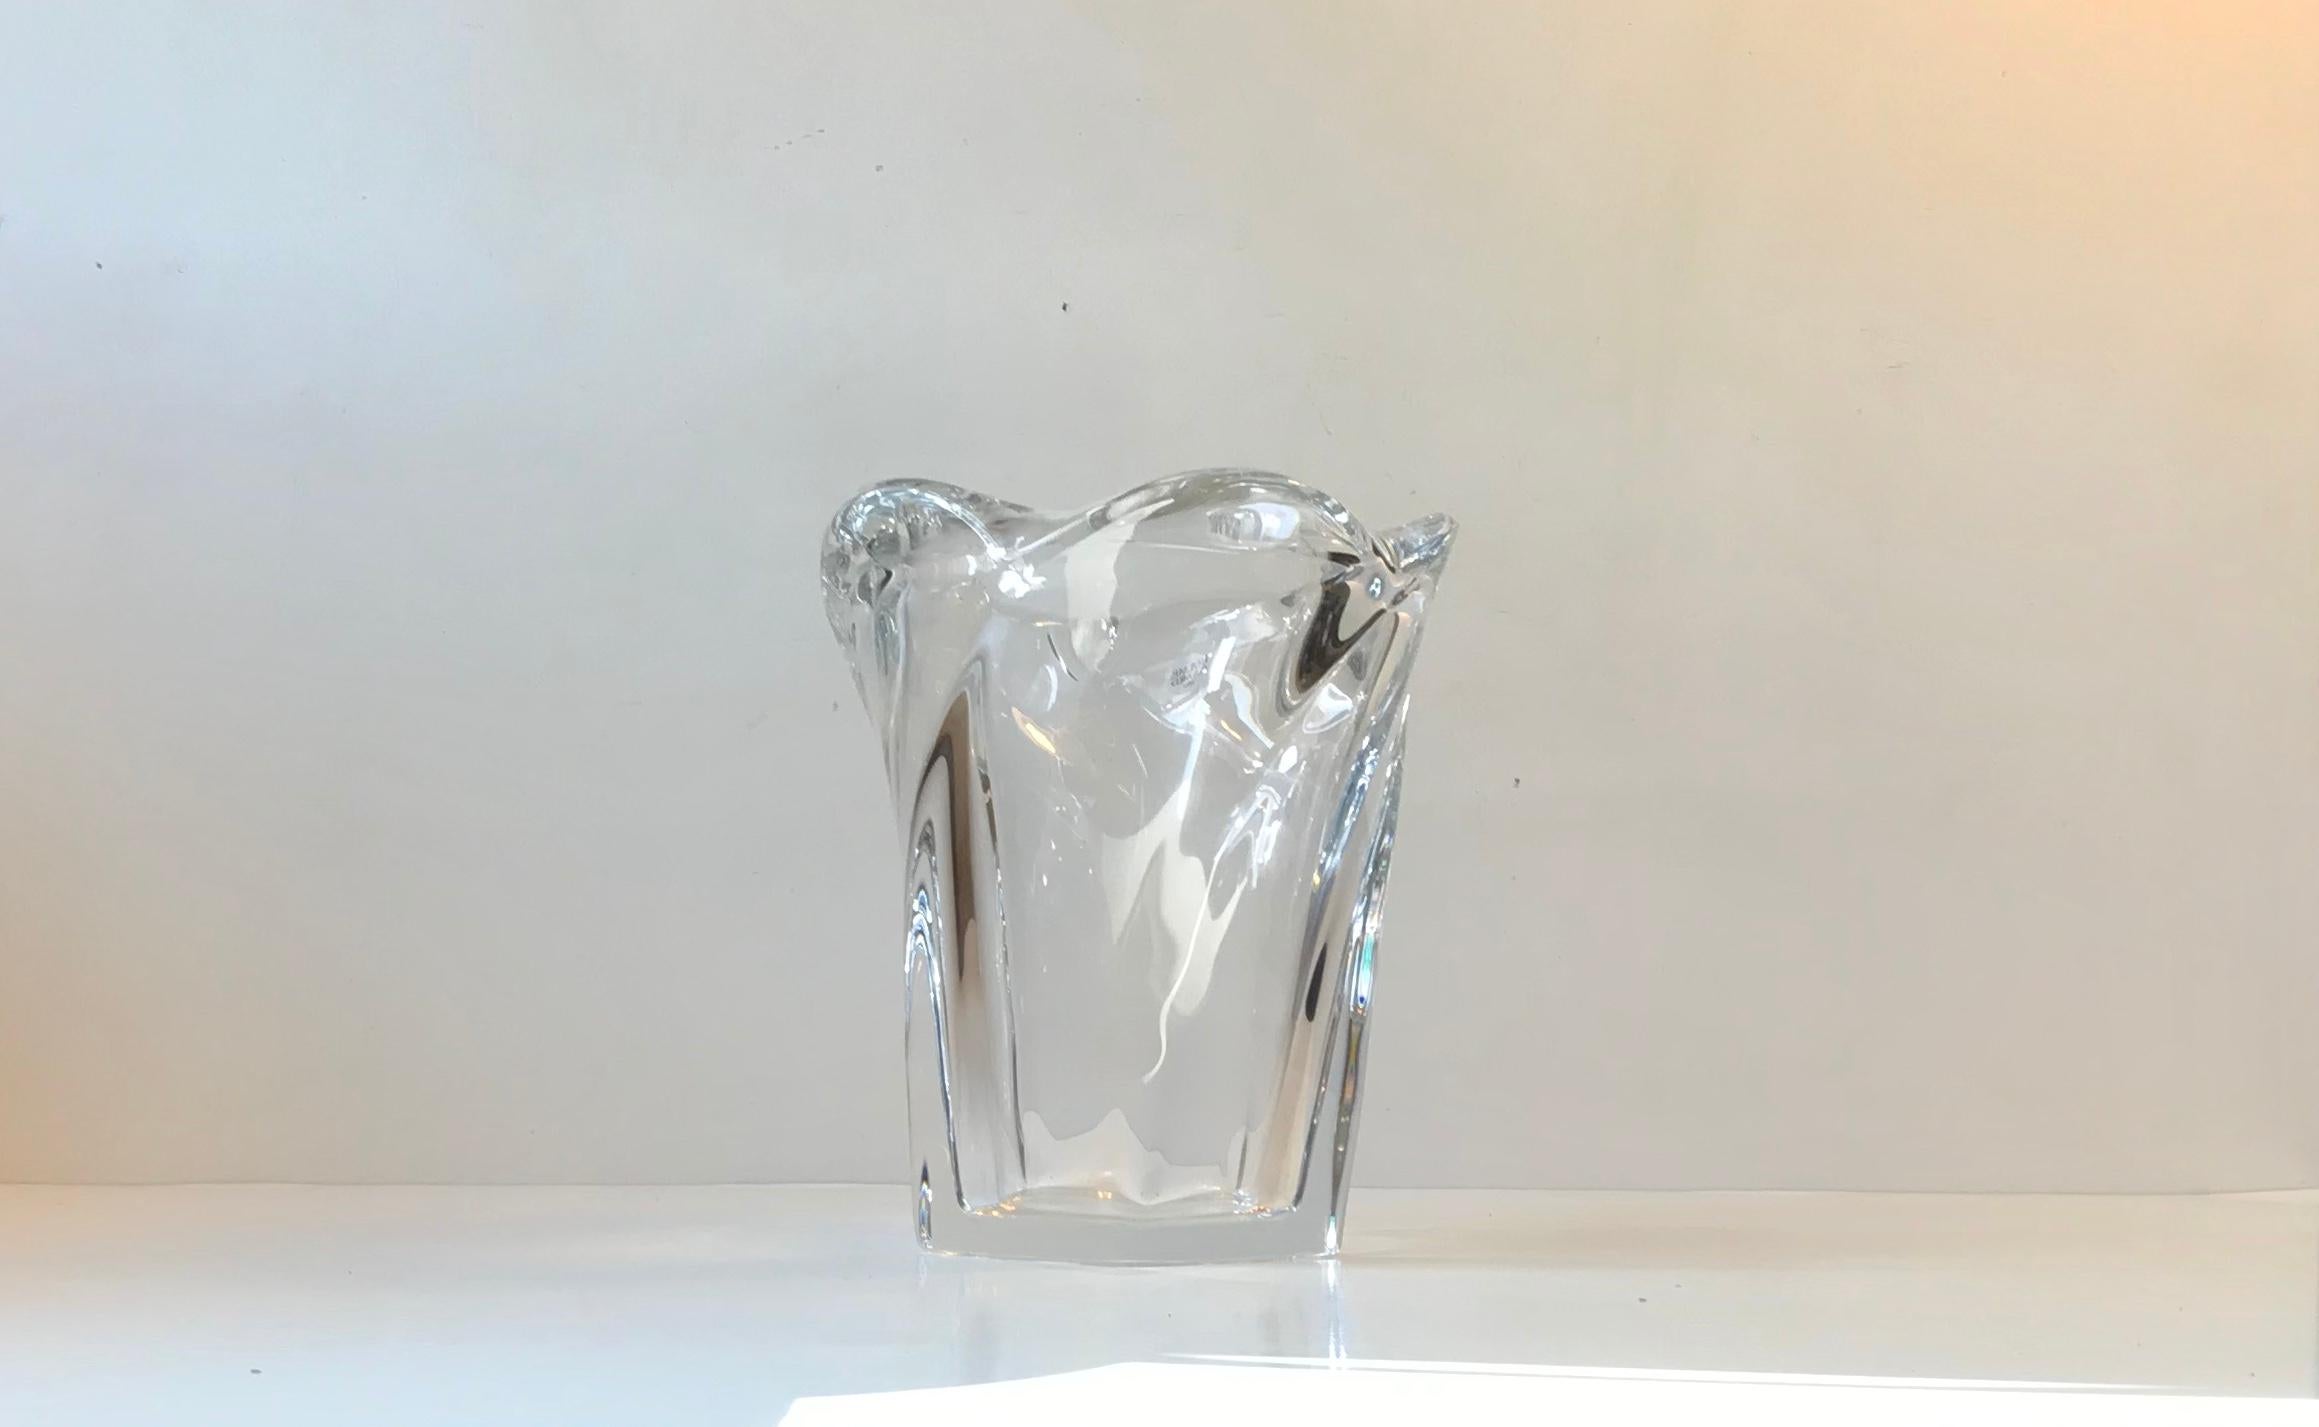 Diese Vase heißt Breeze und egal aus welchem Blickwinkel man sie betrachtet, die Wellen lassen sie so aussehen, als ob sie sich bewegt, fließt und in Bewegung ist. Jeder Winkel ist anders. Er besteht aus dickem, klarem Kristall und wurde vom